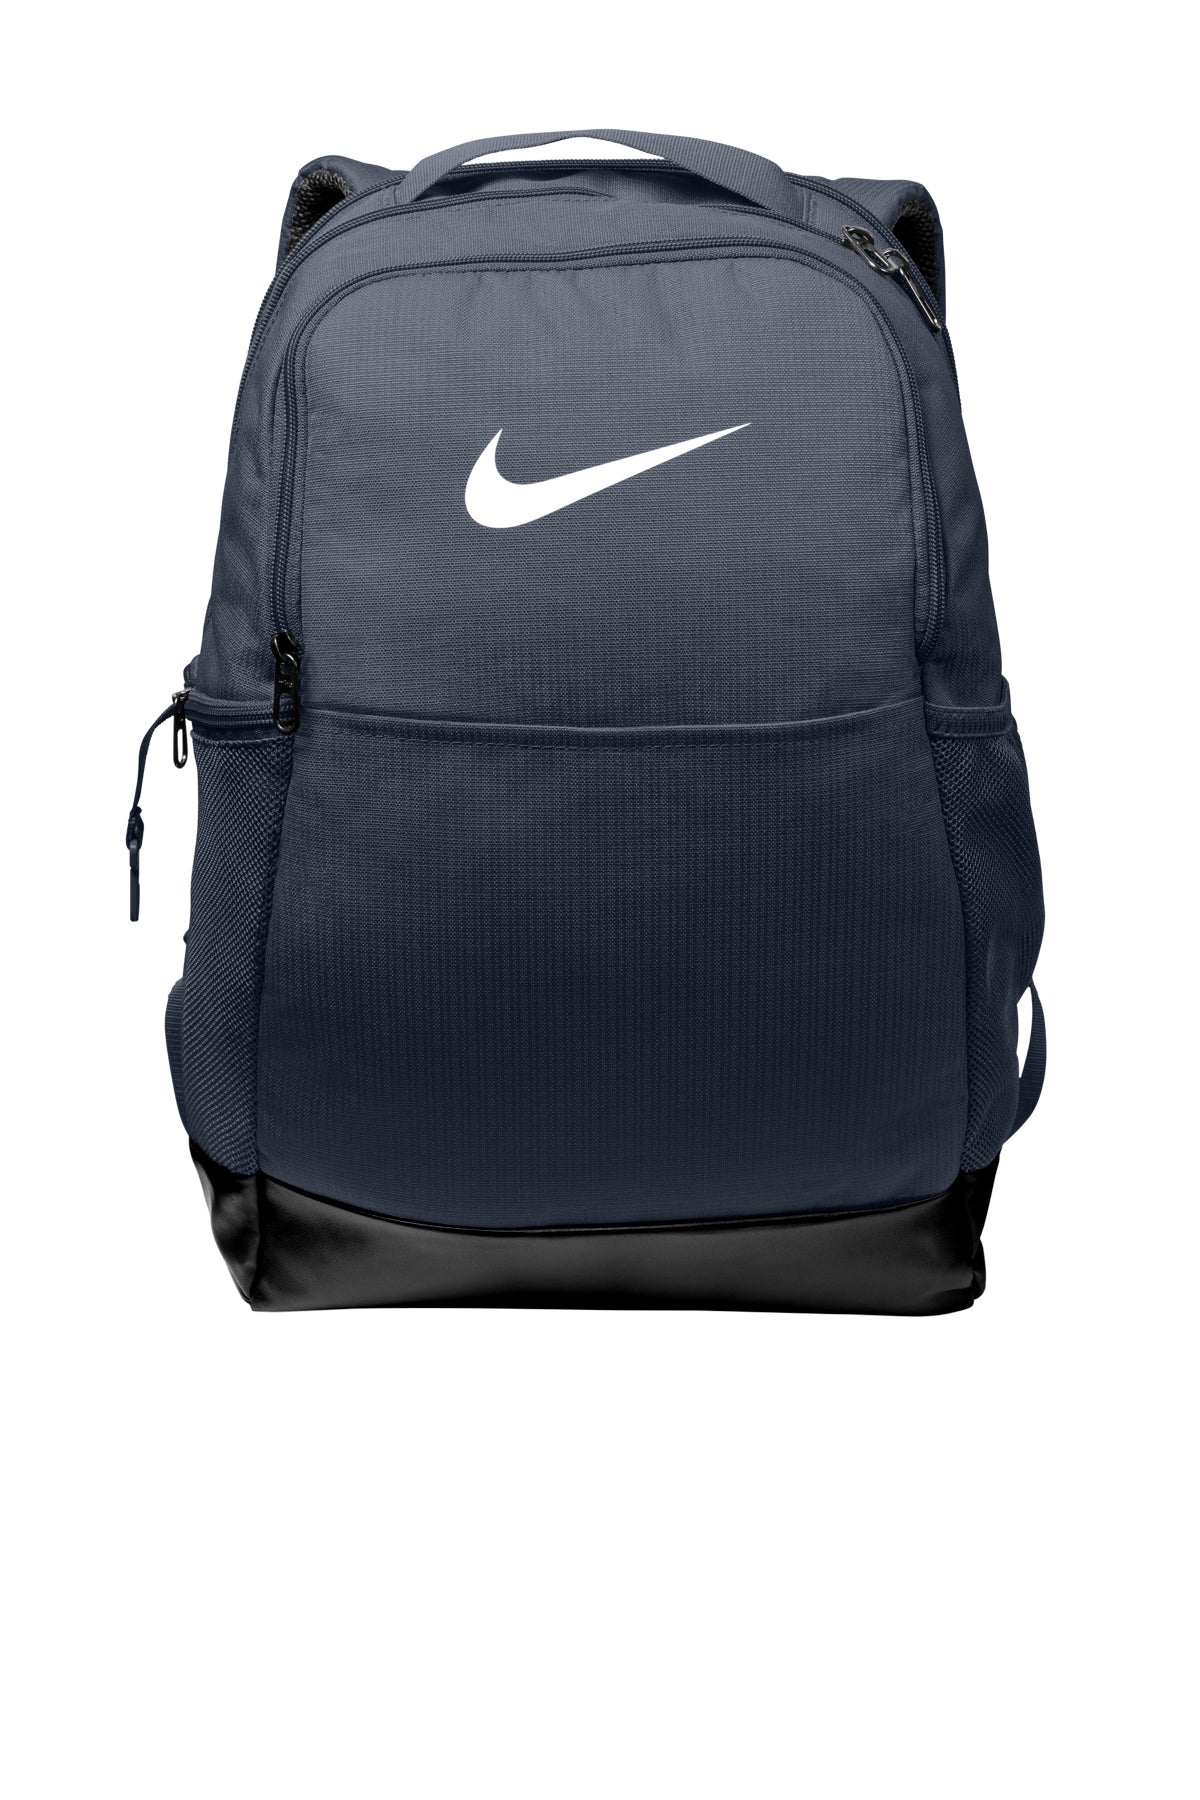 Nike Brasilia Medium Team Backpack